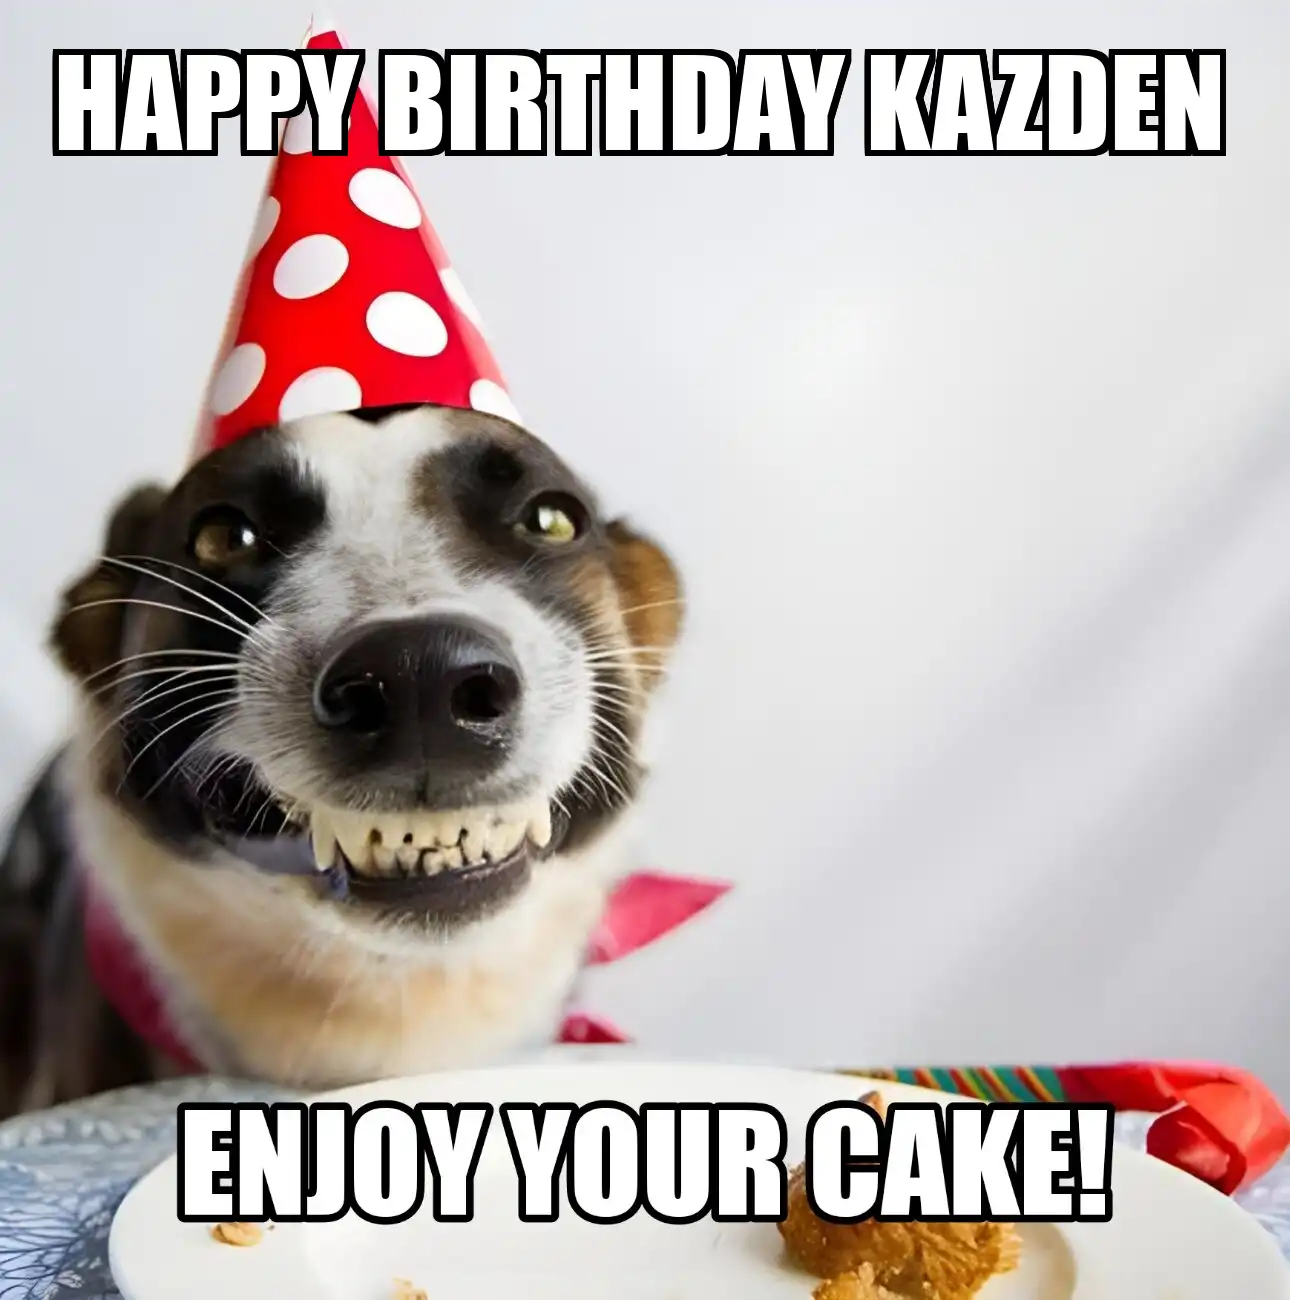 Happy Birthday Kazden Enjoy Your Cake Dog Meme